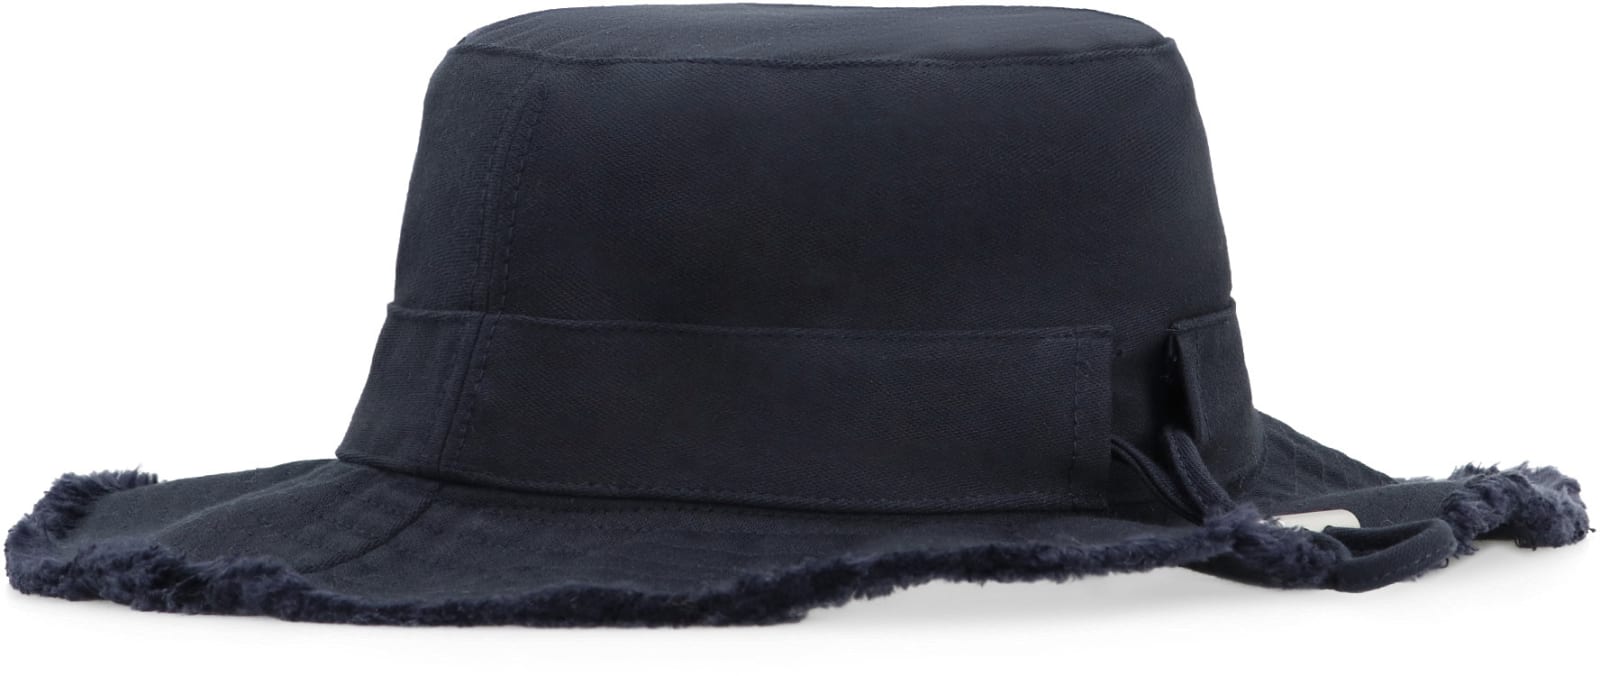 Shop Jacquemus Le Bob Artichaut Bucket Hat In Navy